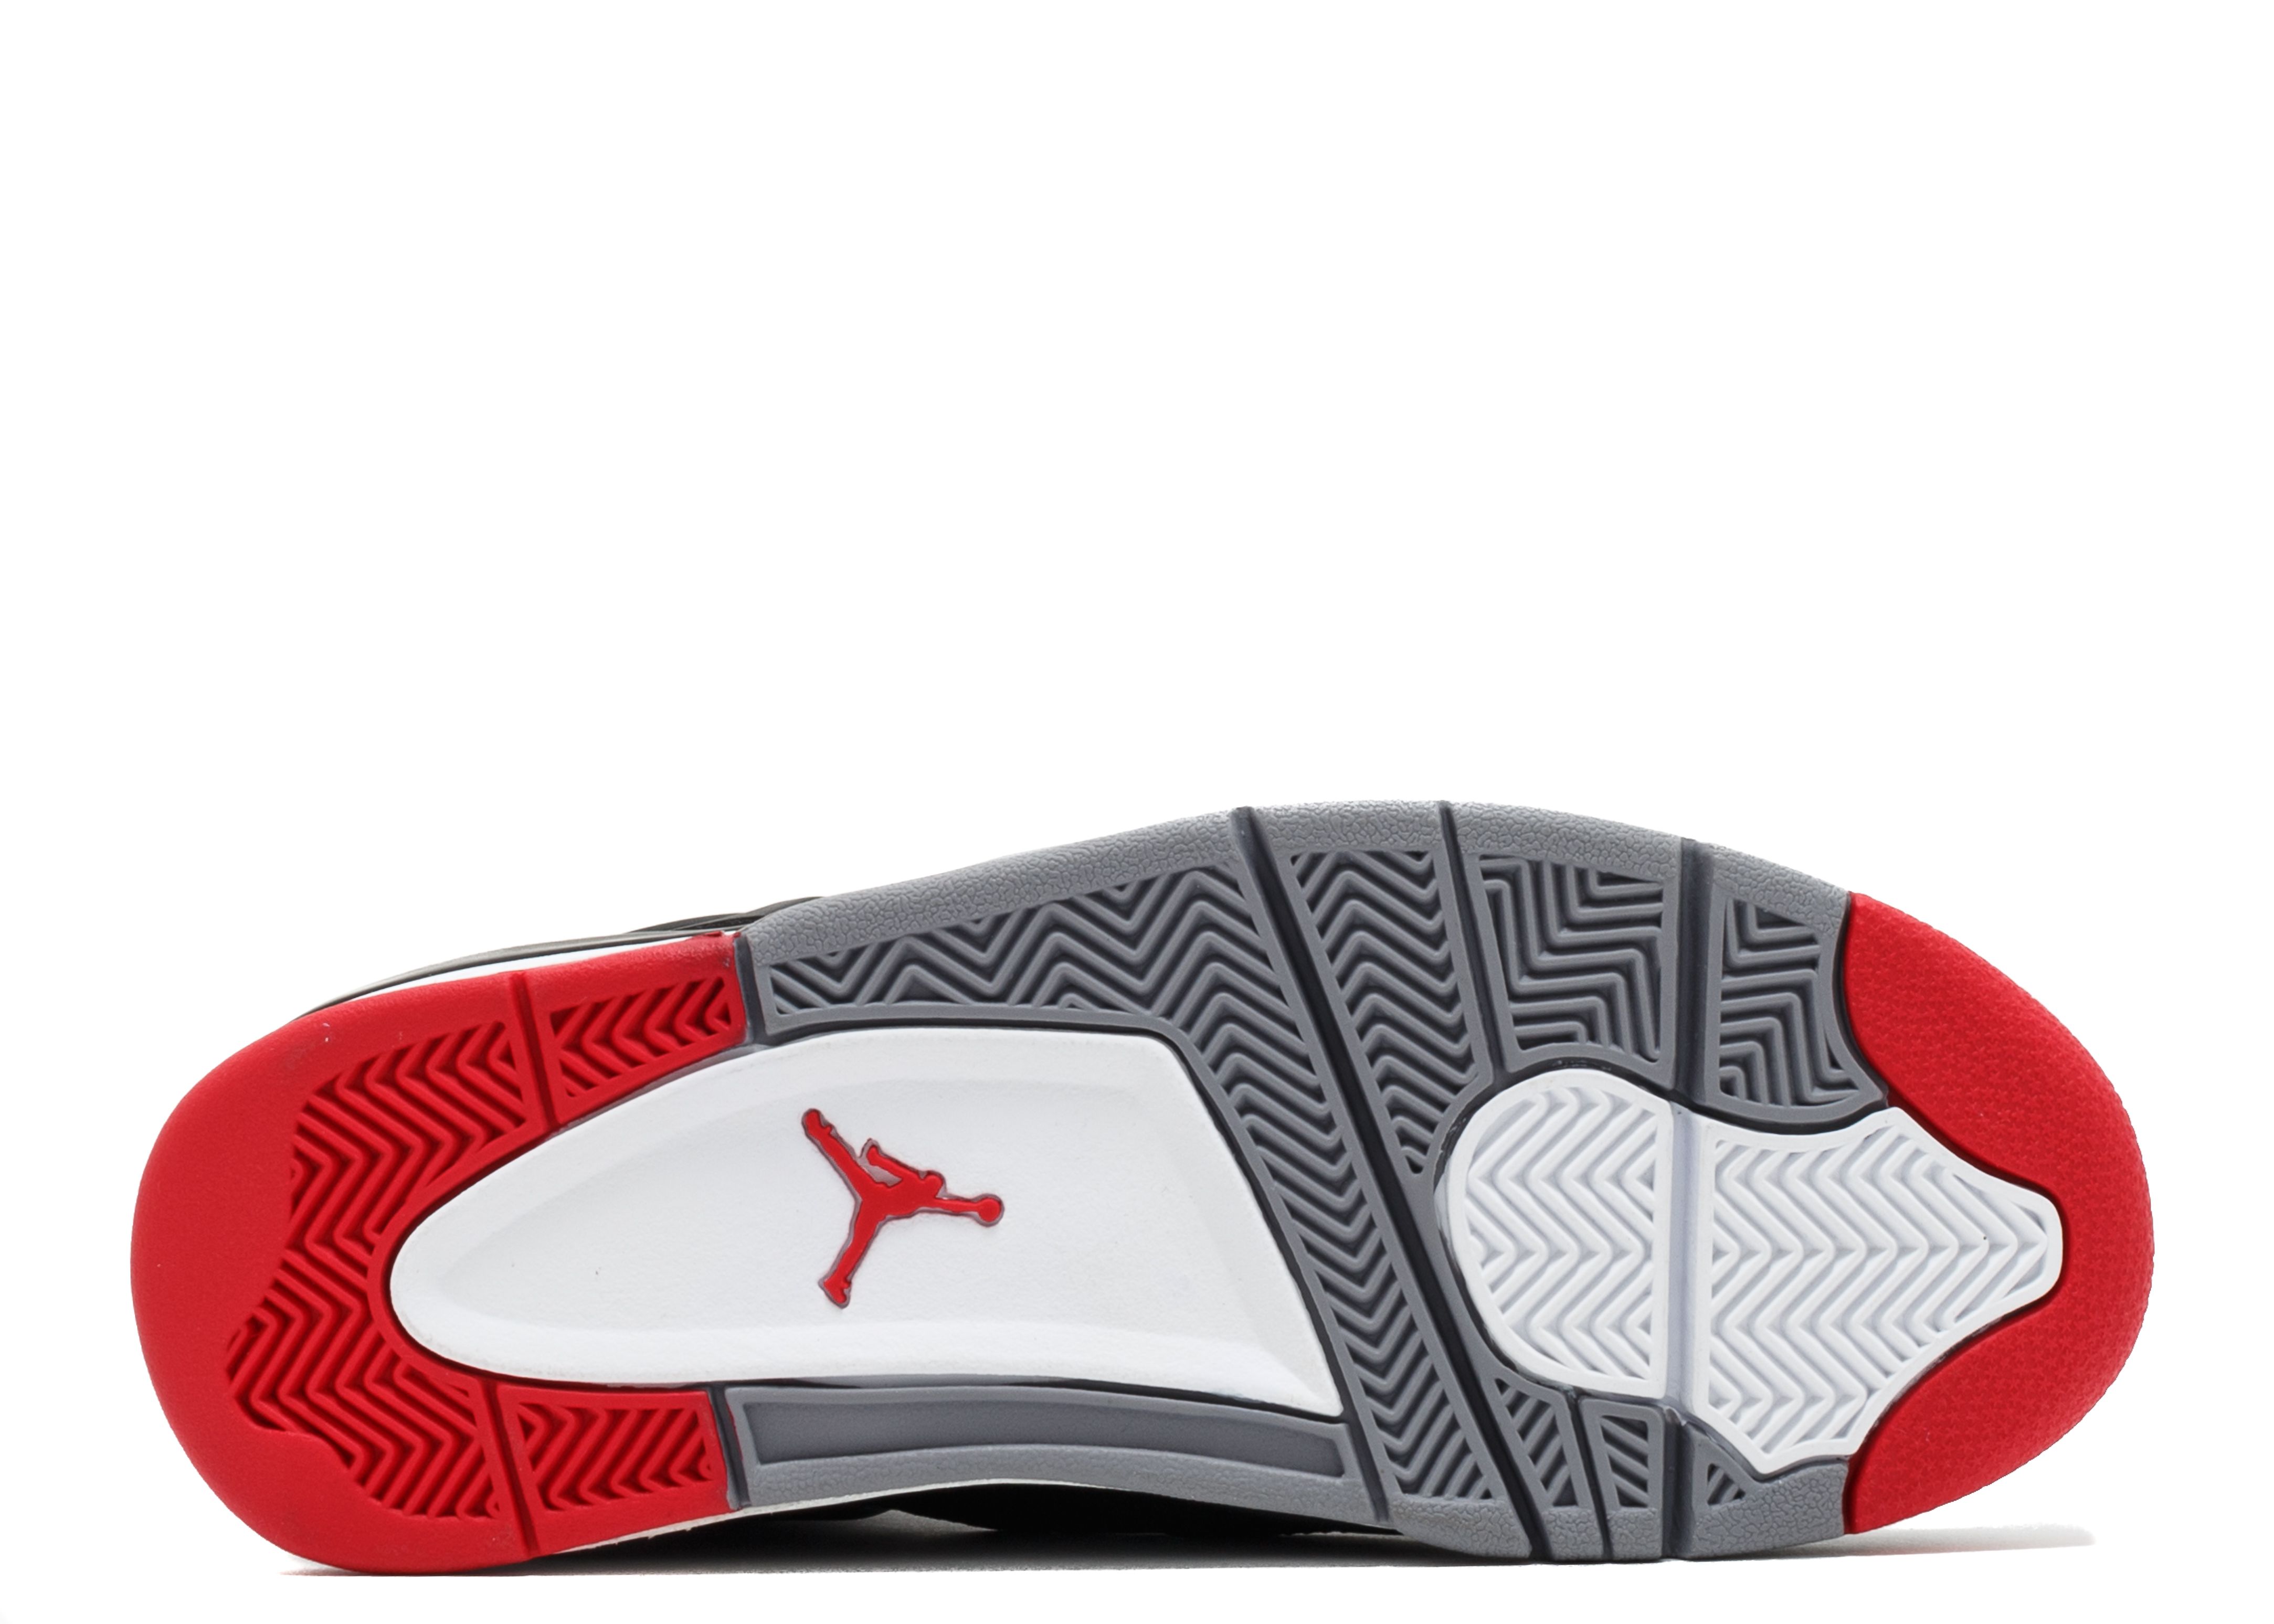 Air Jordan 4 Stay Puft Custom By Danklefs - Air Jordans, Release Dates &  More